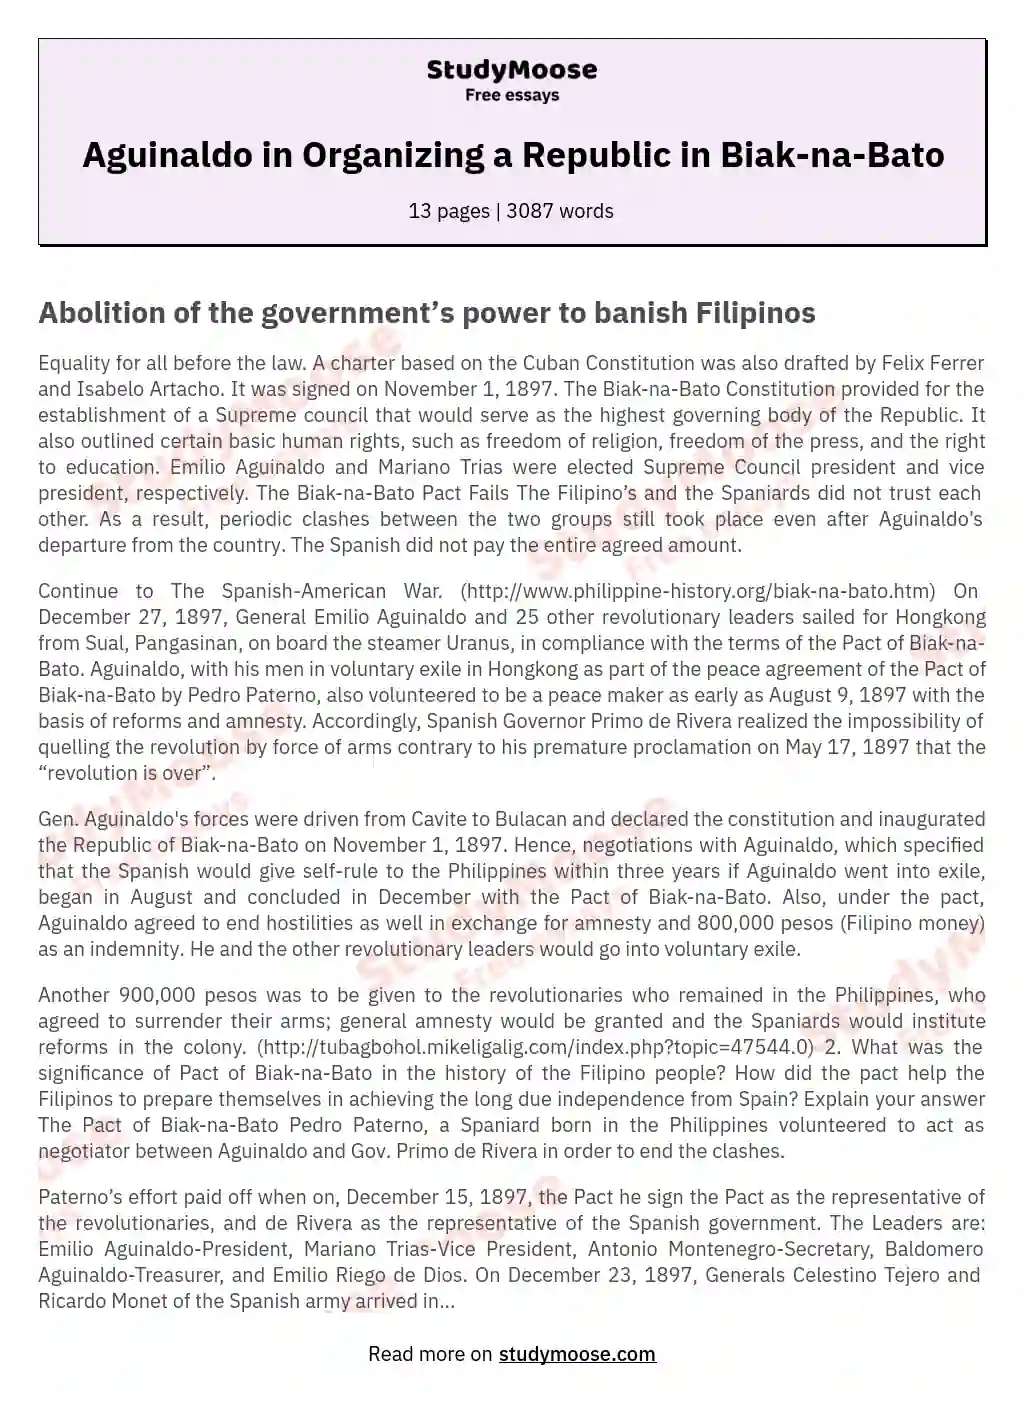 Aguinaldo in Organizing a Republic in Biak-na-Bato essay